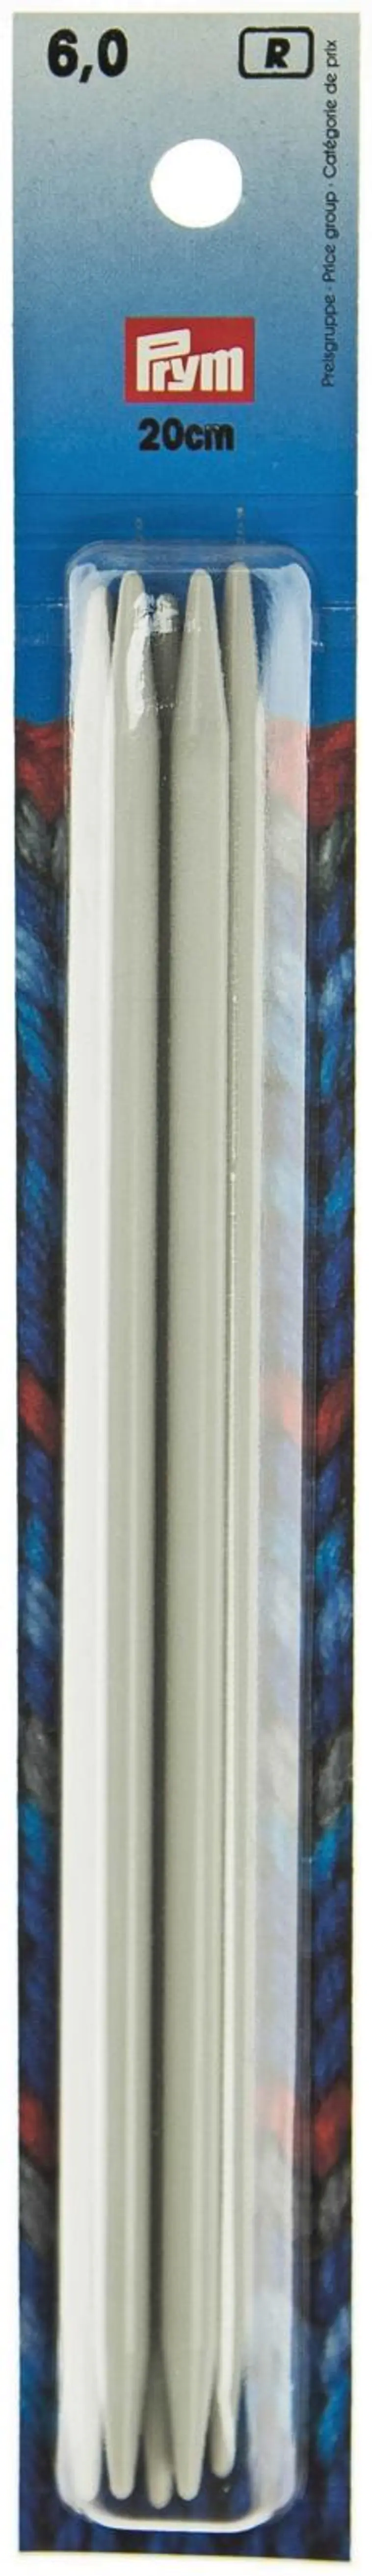 Prym Sukkapuikko 20cm - 6mm muovi